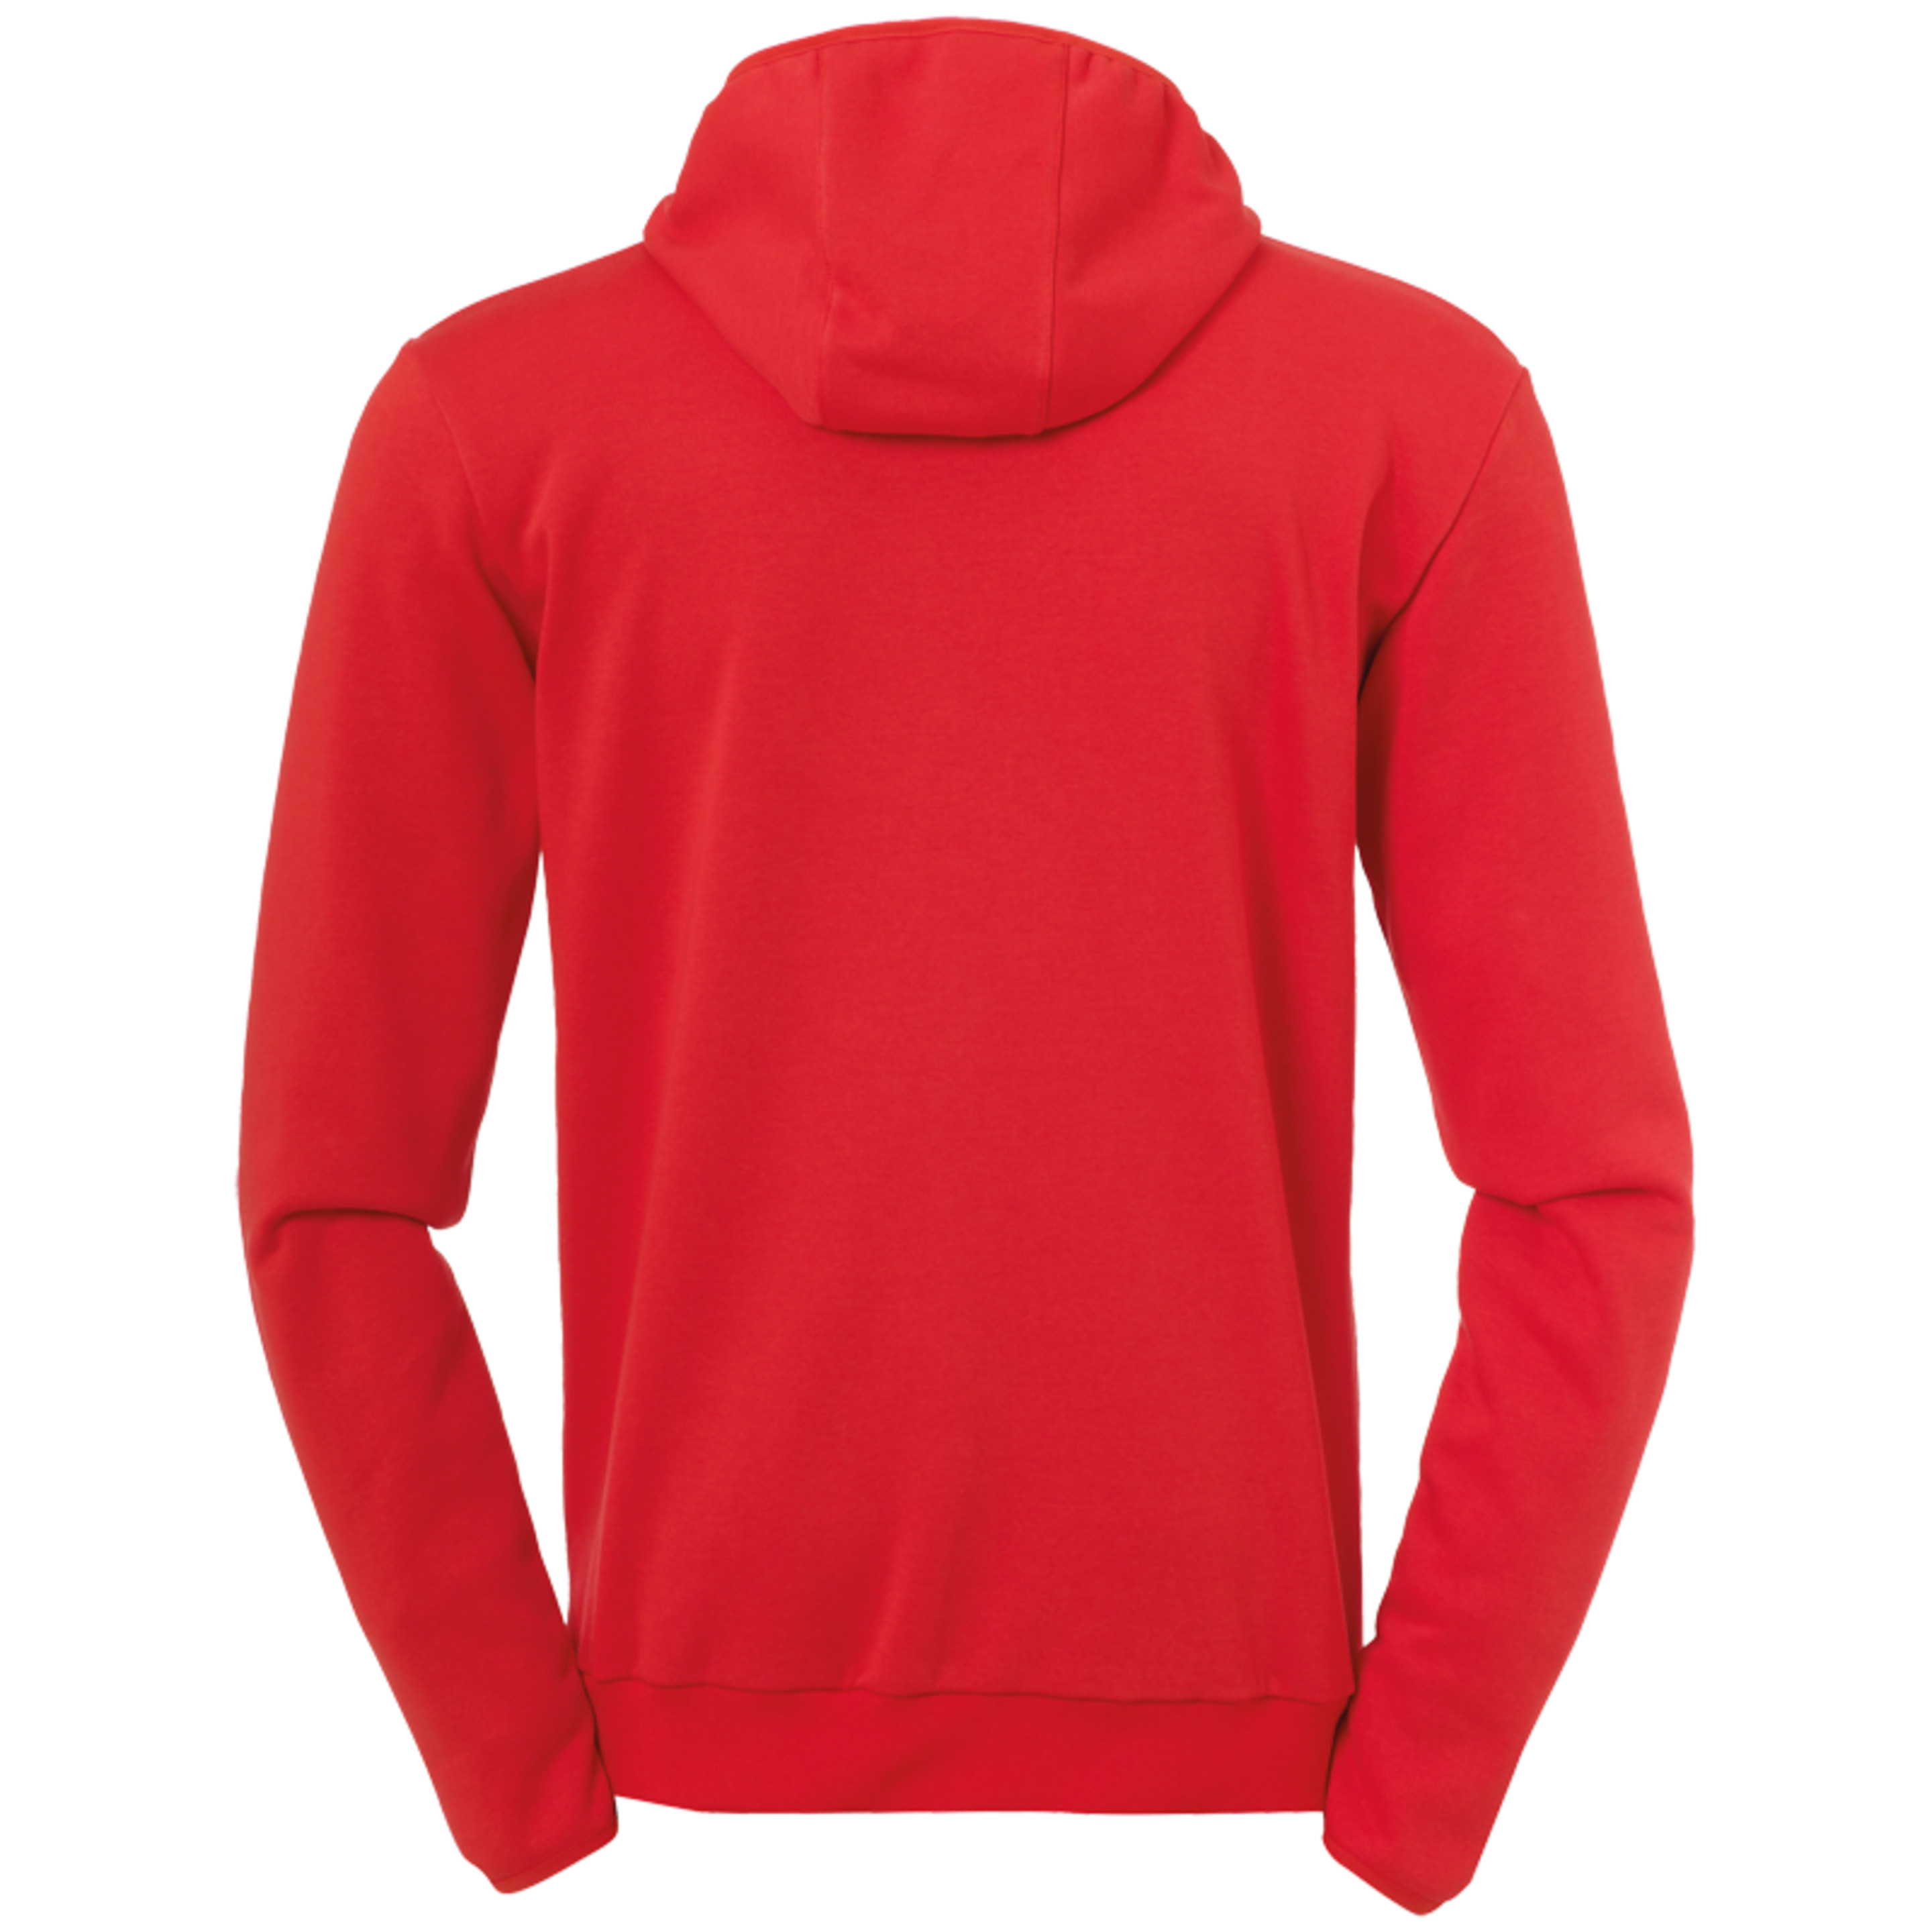 Essential Hood Jacket Red Uhlsport